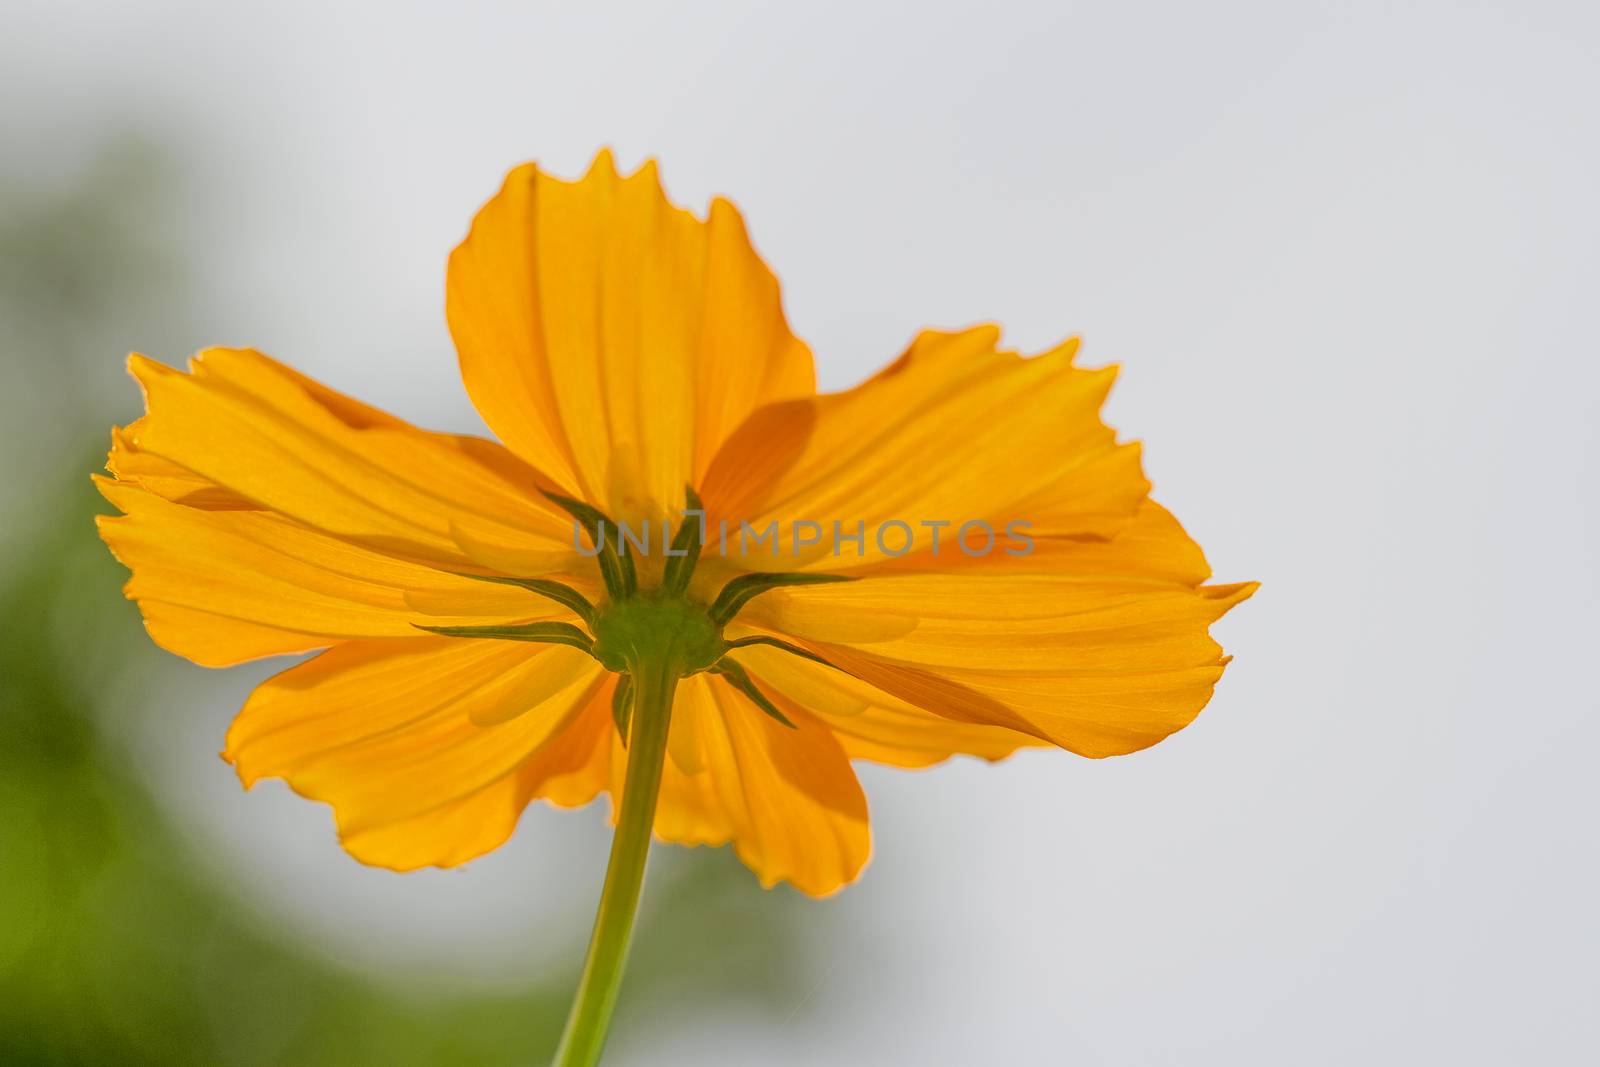 The bottom of the orange flower by TakerWalker